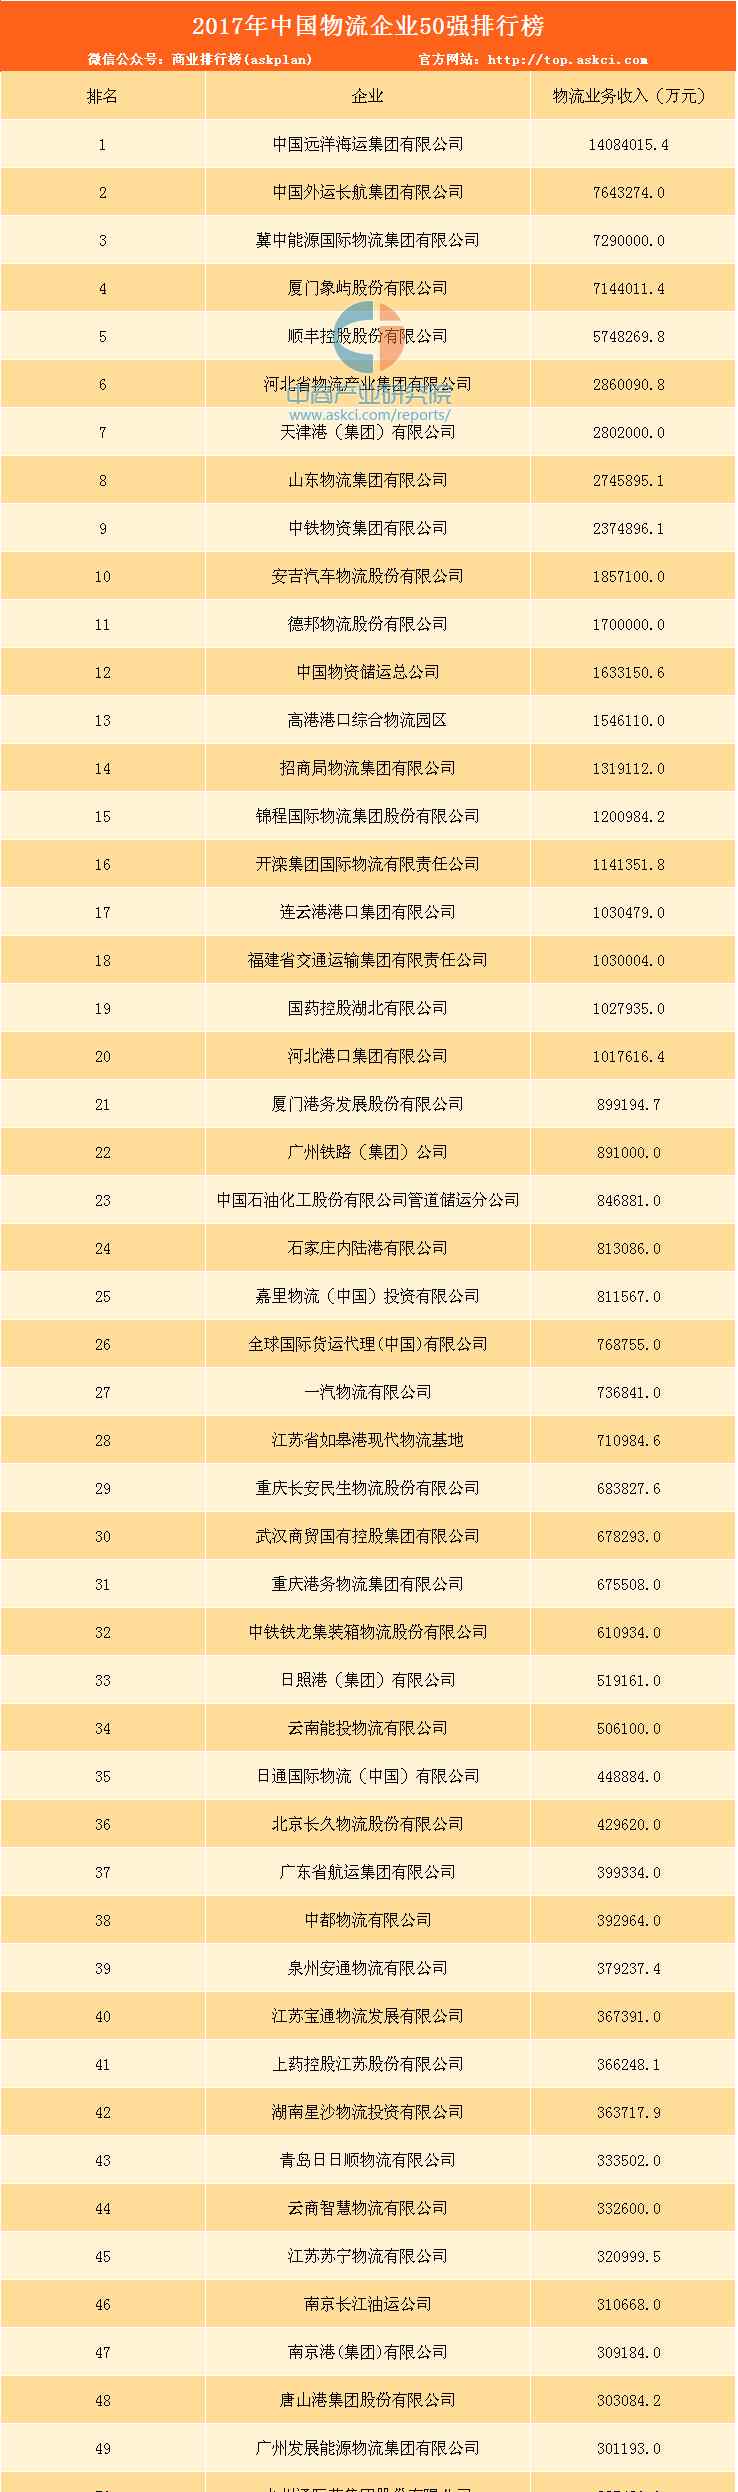 中国物流公司 2017中国物流企业50强排行榜